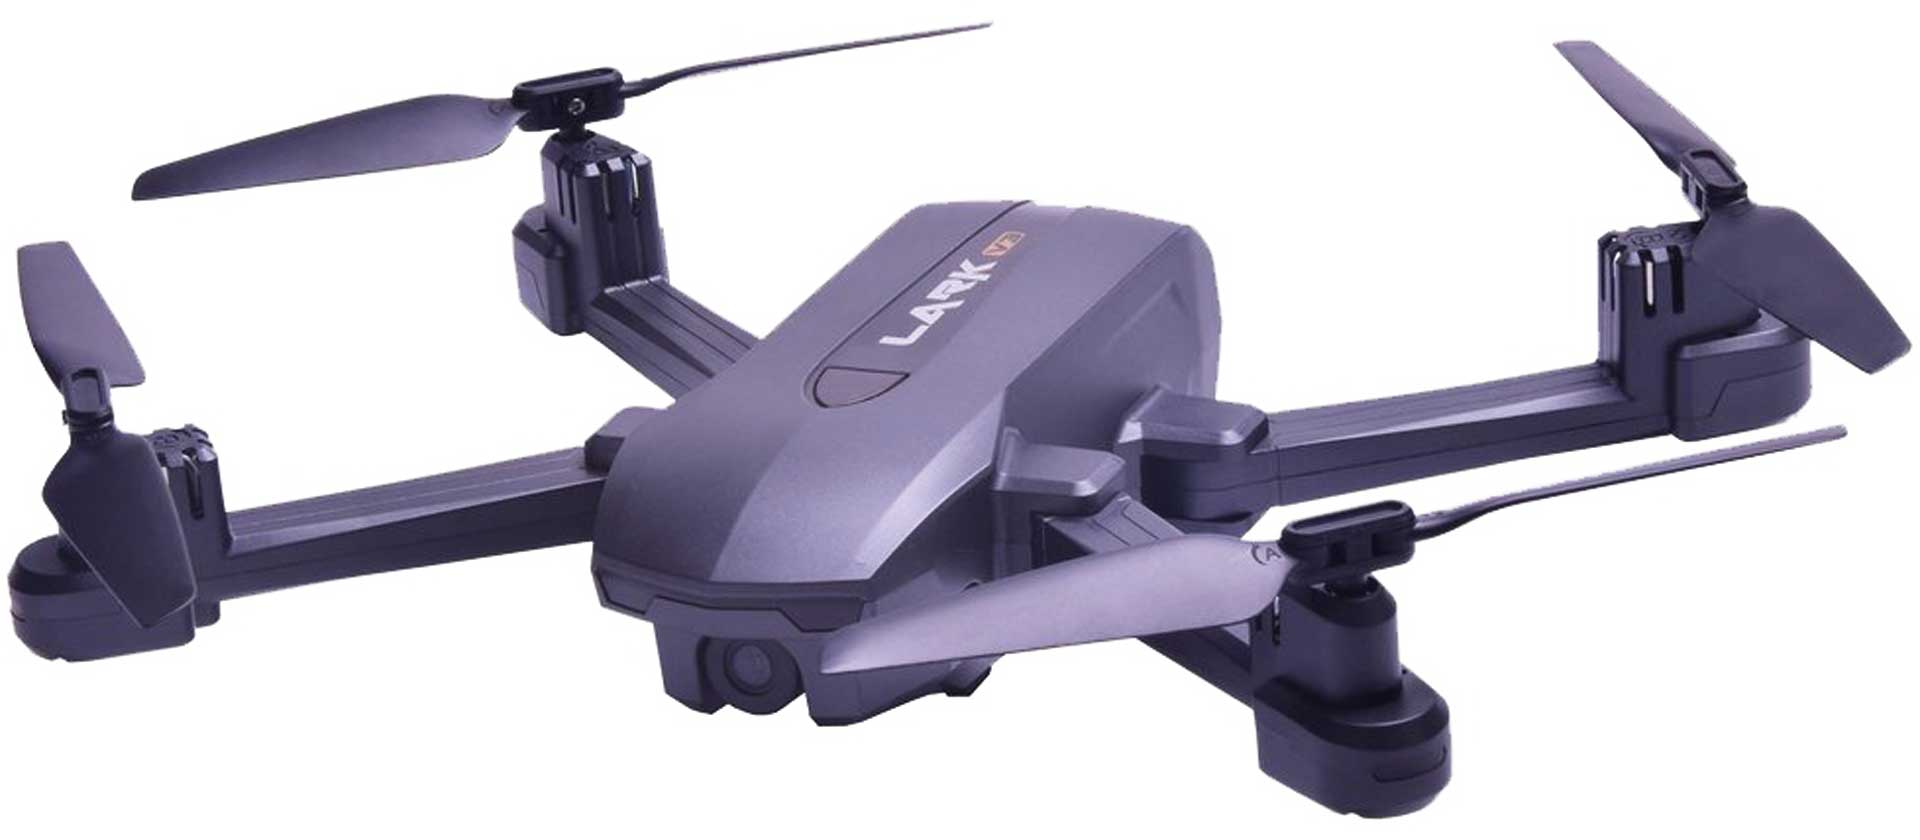 DRIVE & FLY MODELS SkyWatcher Lark 4K V3 - GPS drone